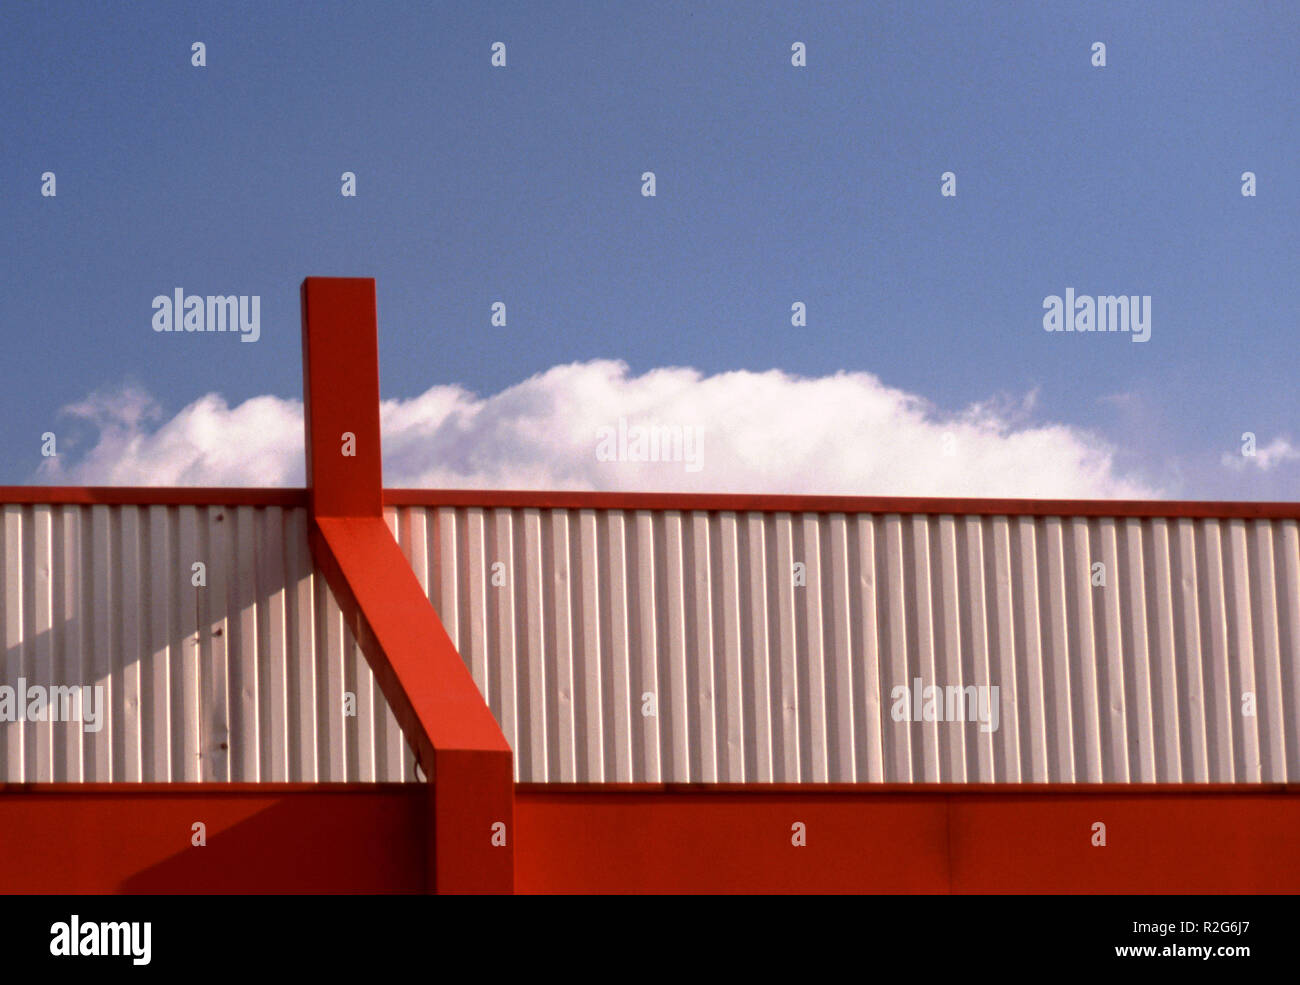 eye-catching facade Stock Photo